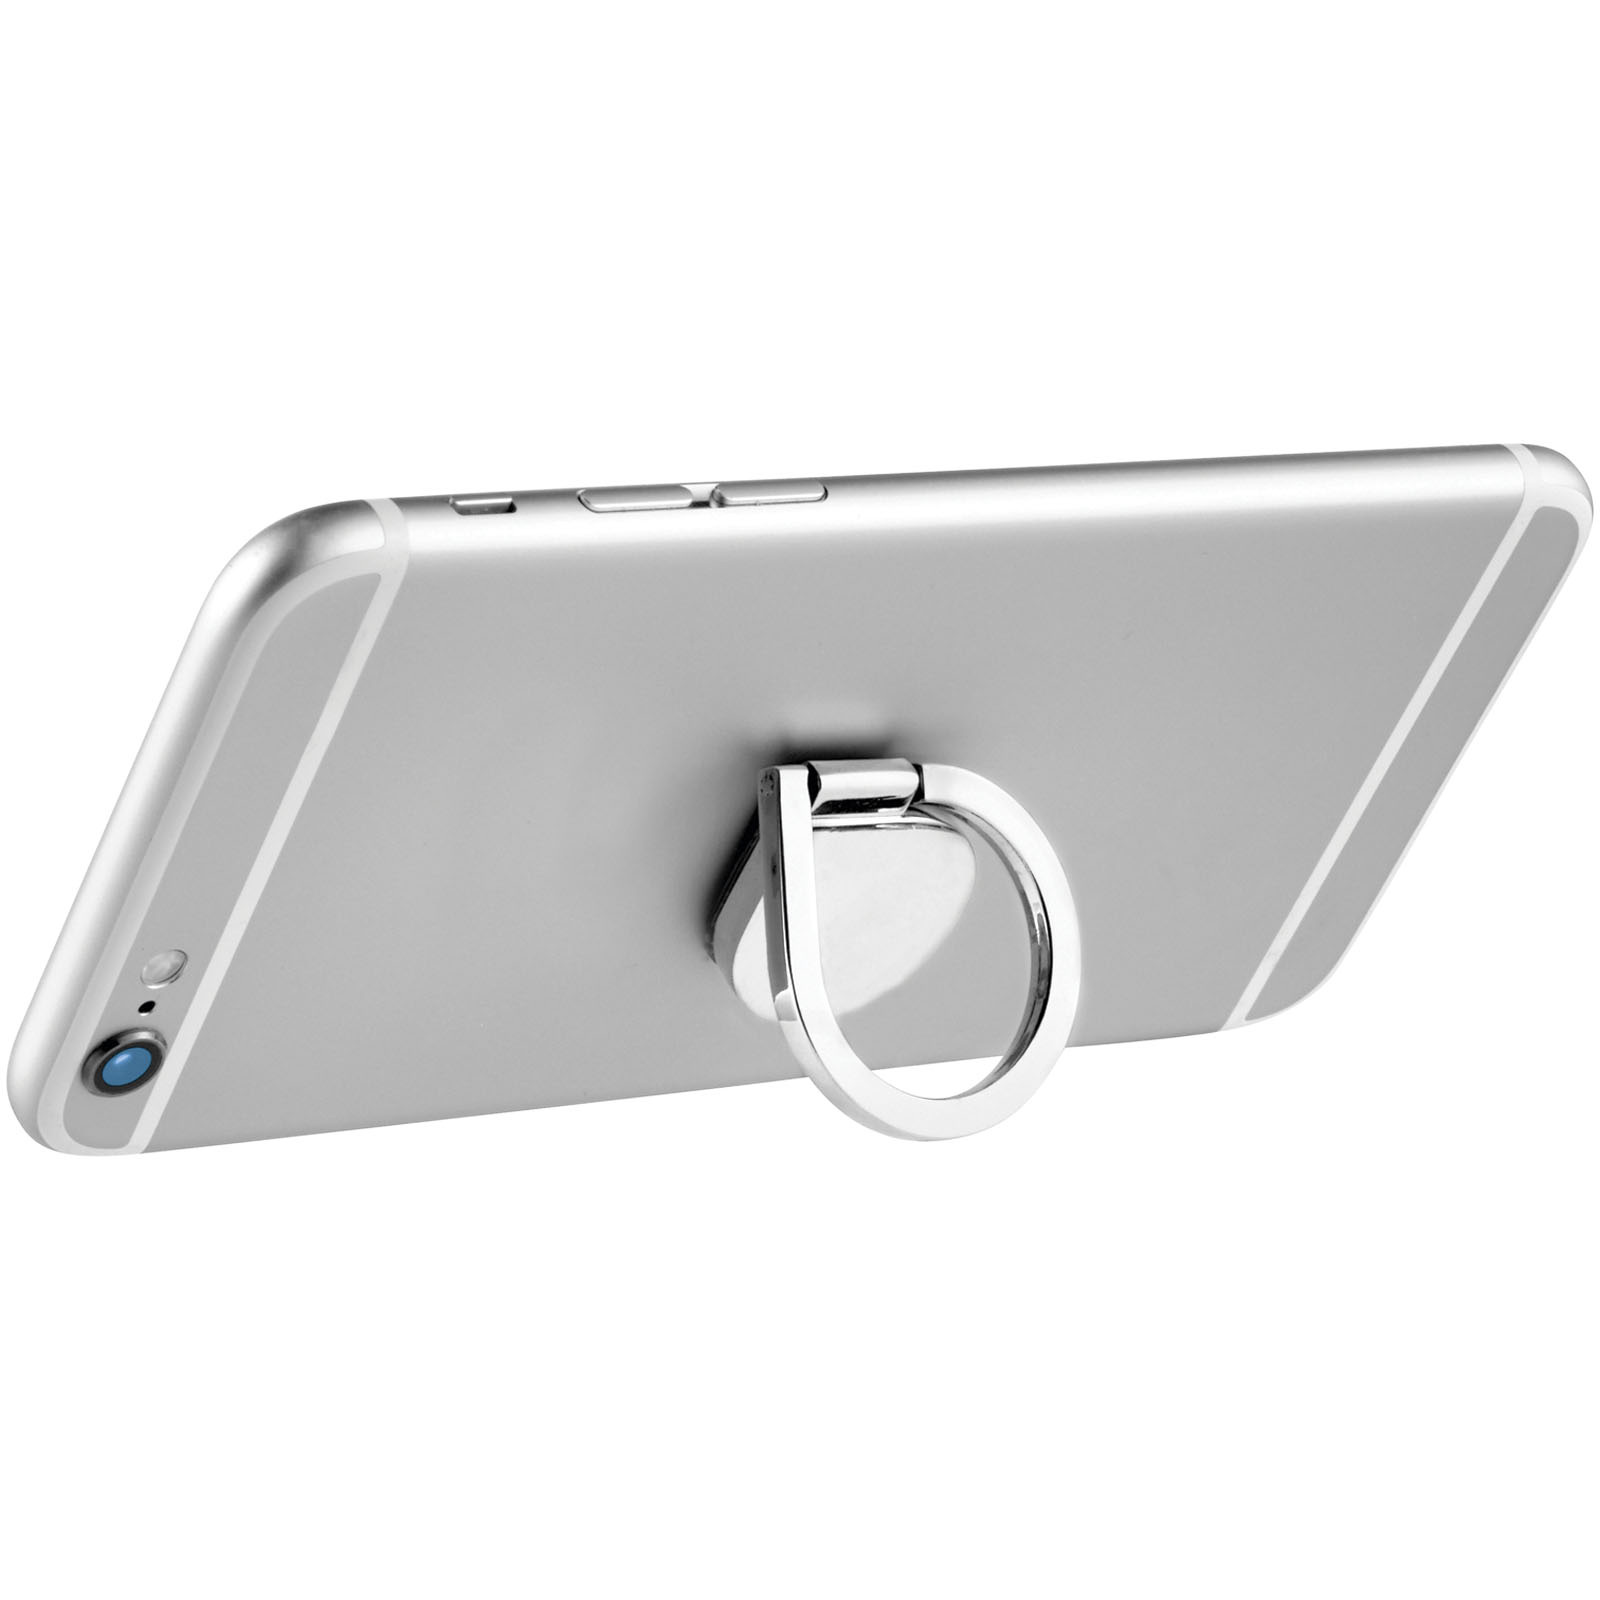 Accessoires pour téléphone et tablette - Support de téléphone avec anneau en aluminium Cell